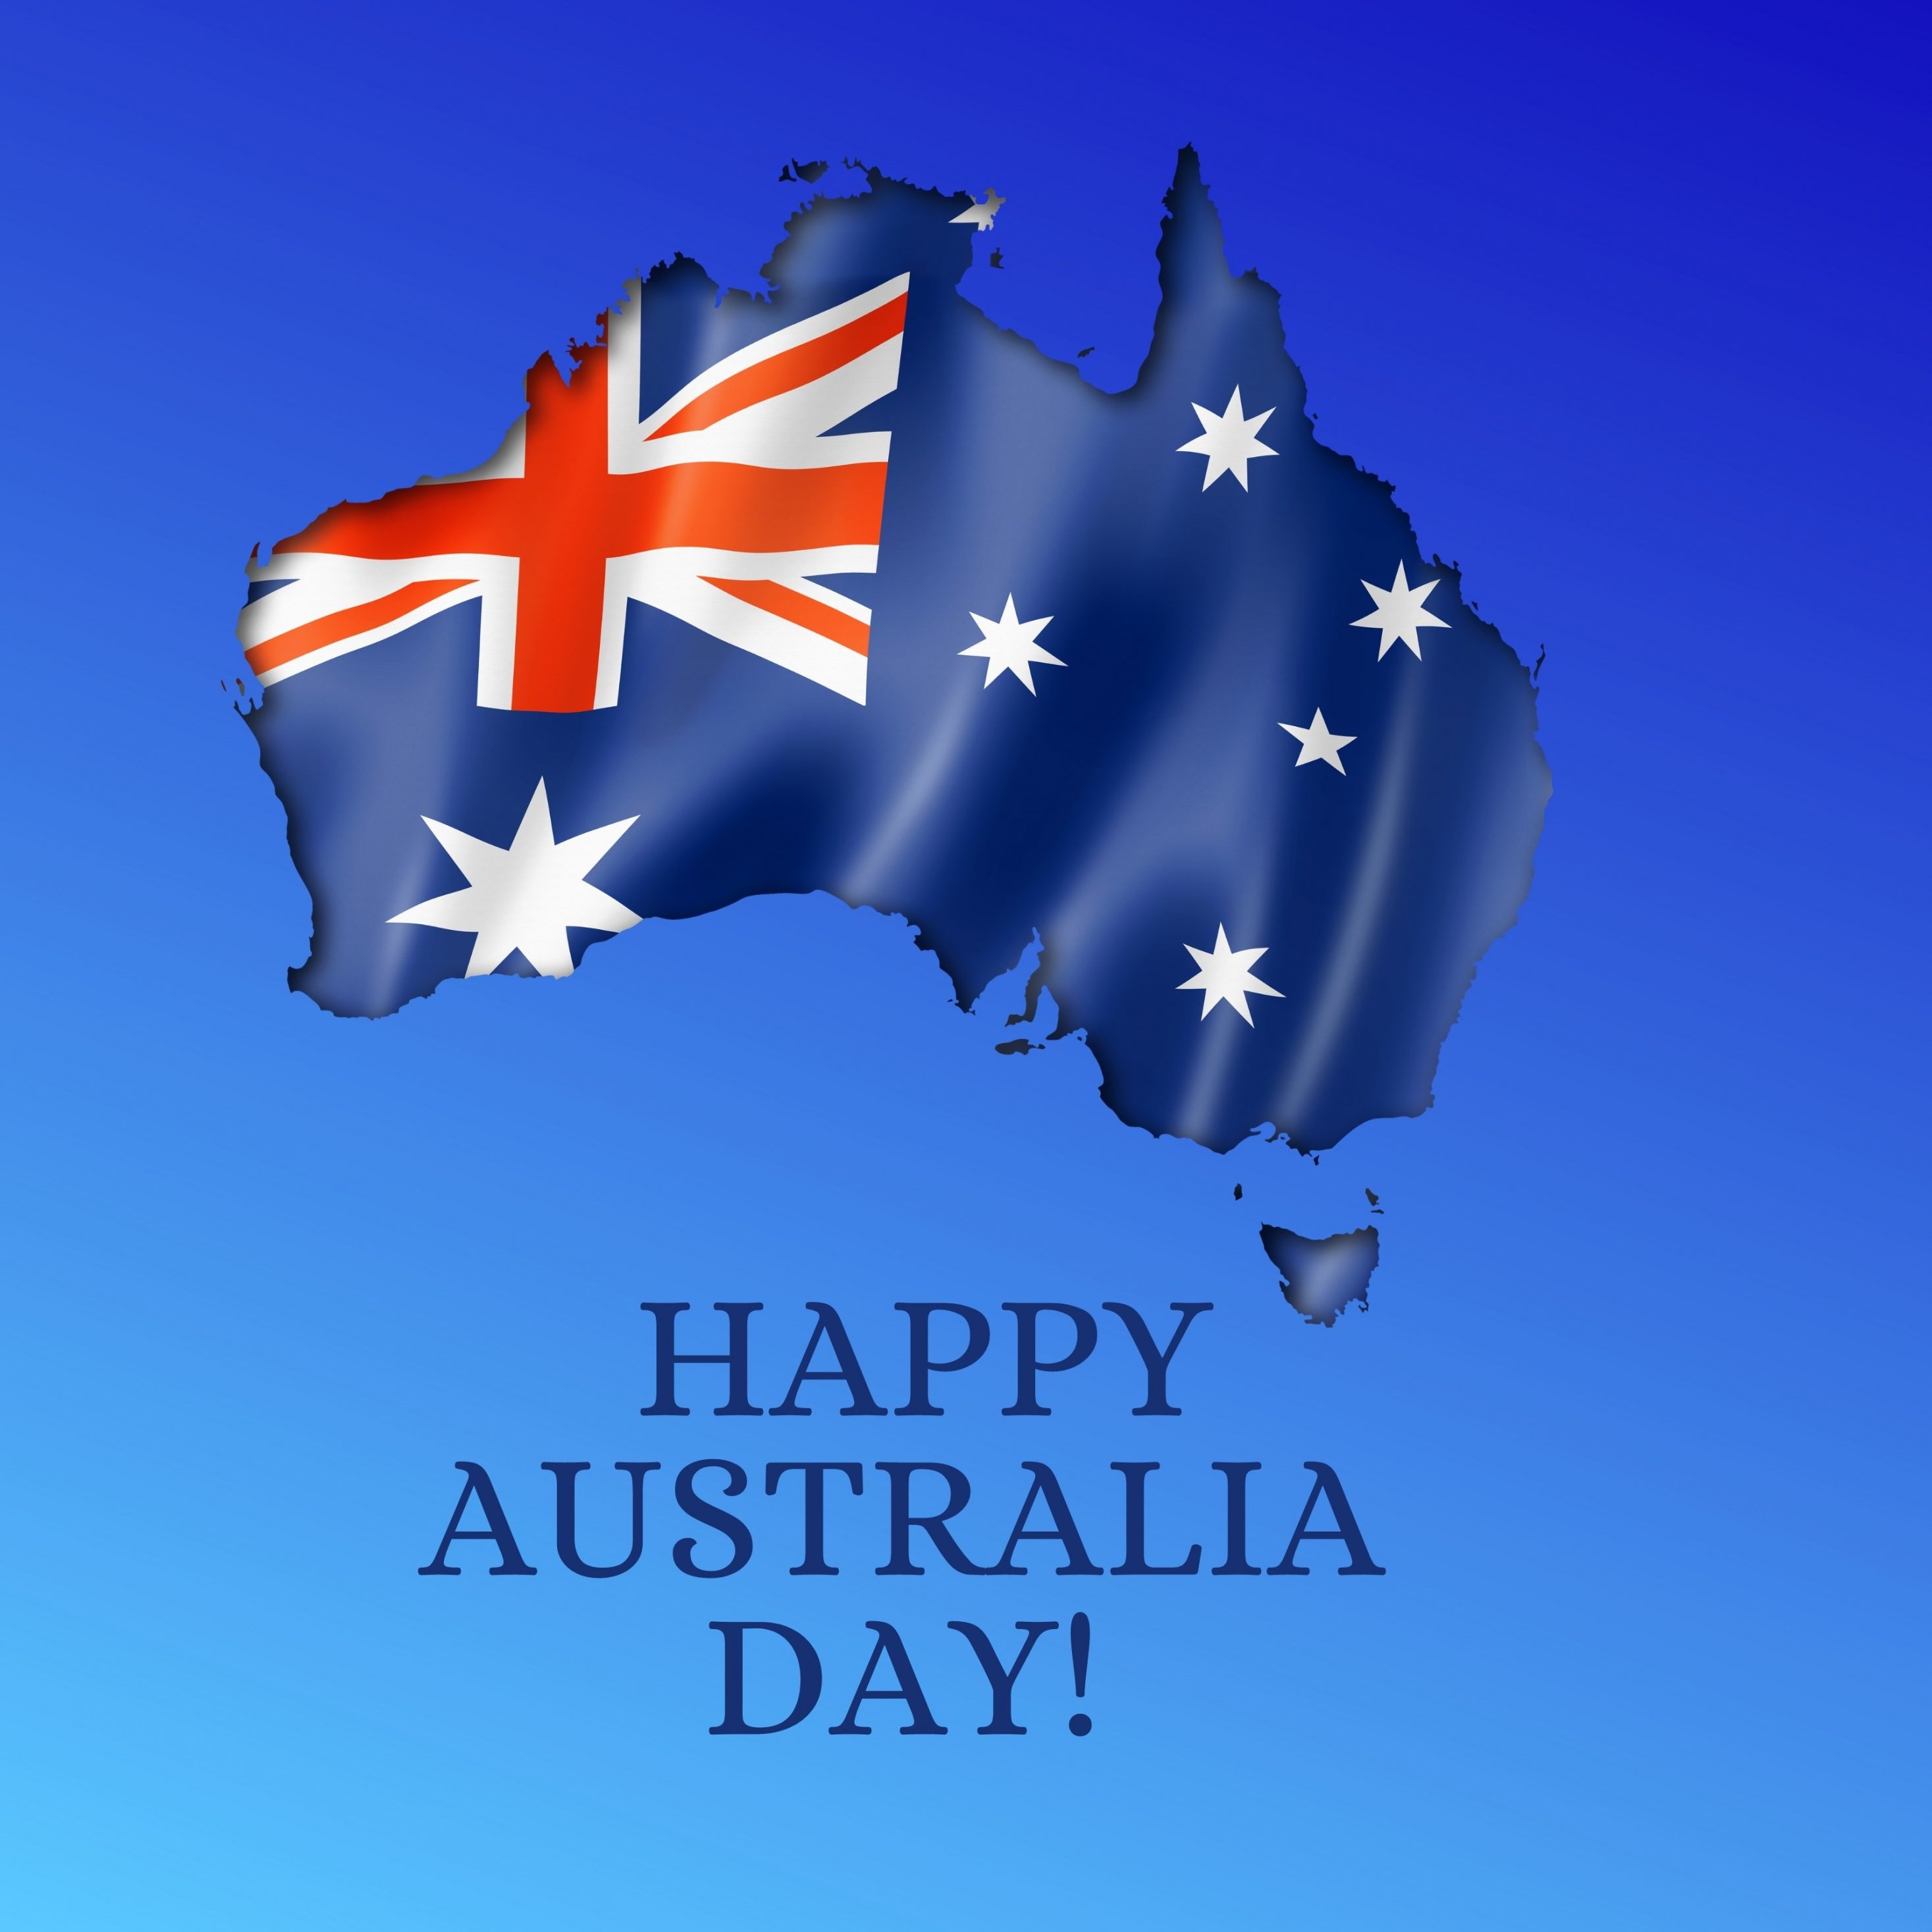 2934x2934 iOS iPad wallpaper 4k Happy Australia Day iPad Wallpaper 2934x2934 pixels resolution